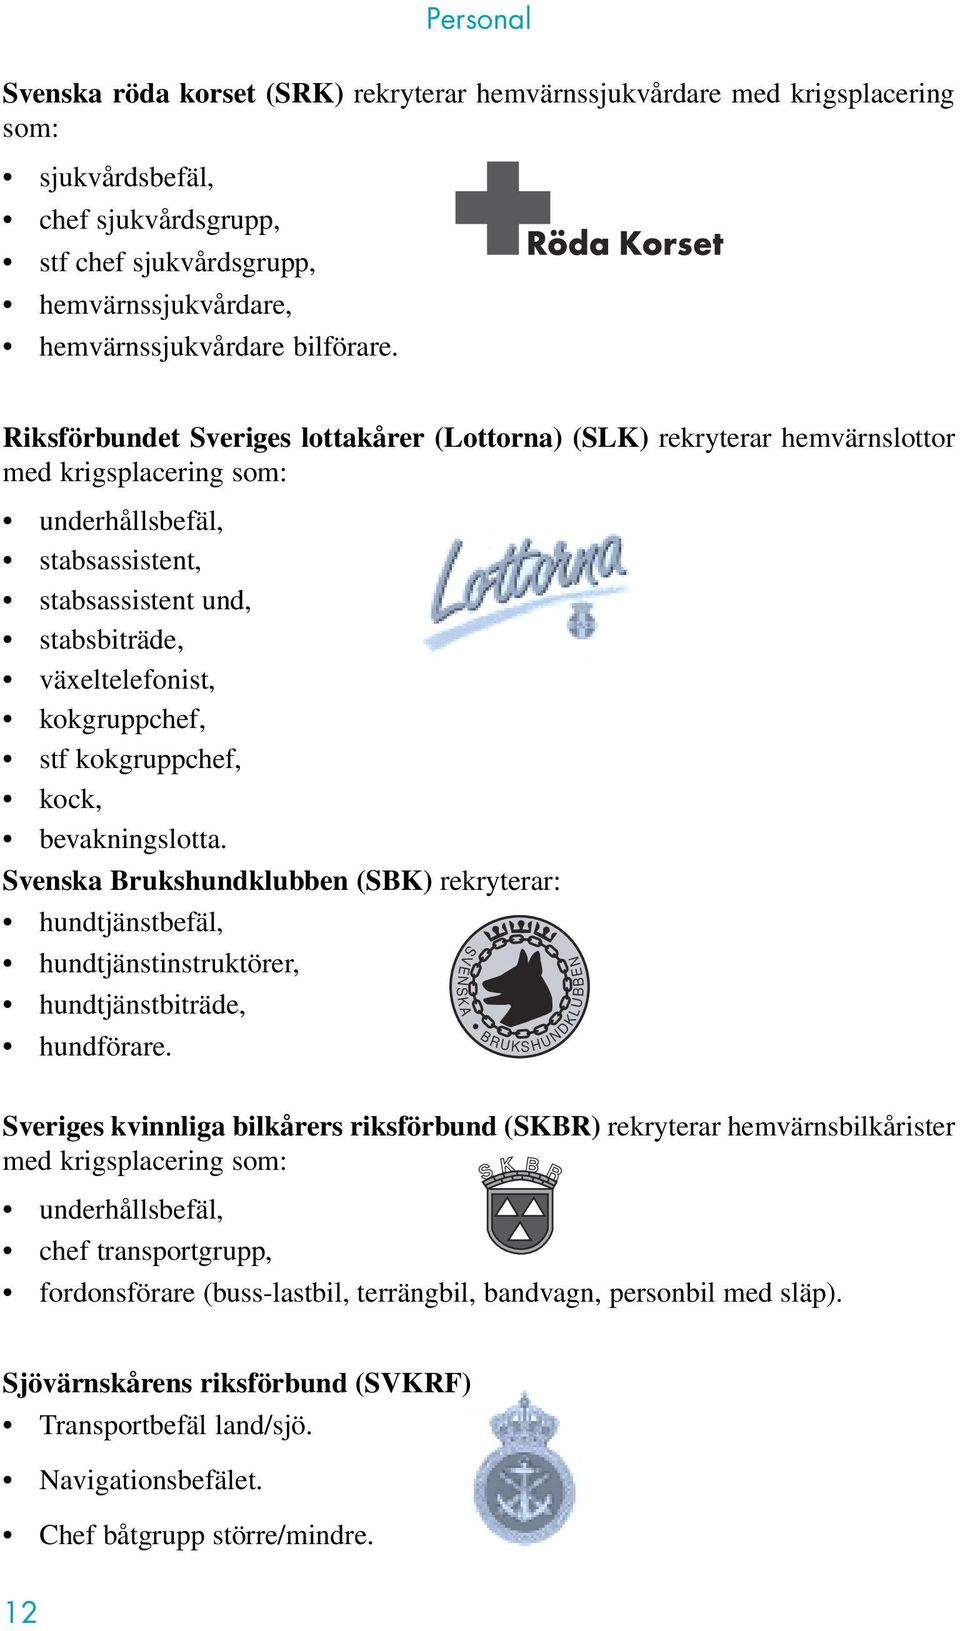 Riksförbundet Sveriges lottakårer (Lottorna) (SLK) rekryterar hemvärnslottor med krigsplacering som: underhållsbefäl, stabsassistent, stabsassistent und, stabsbiträde, växeltelefonist, kokgruppchef,